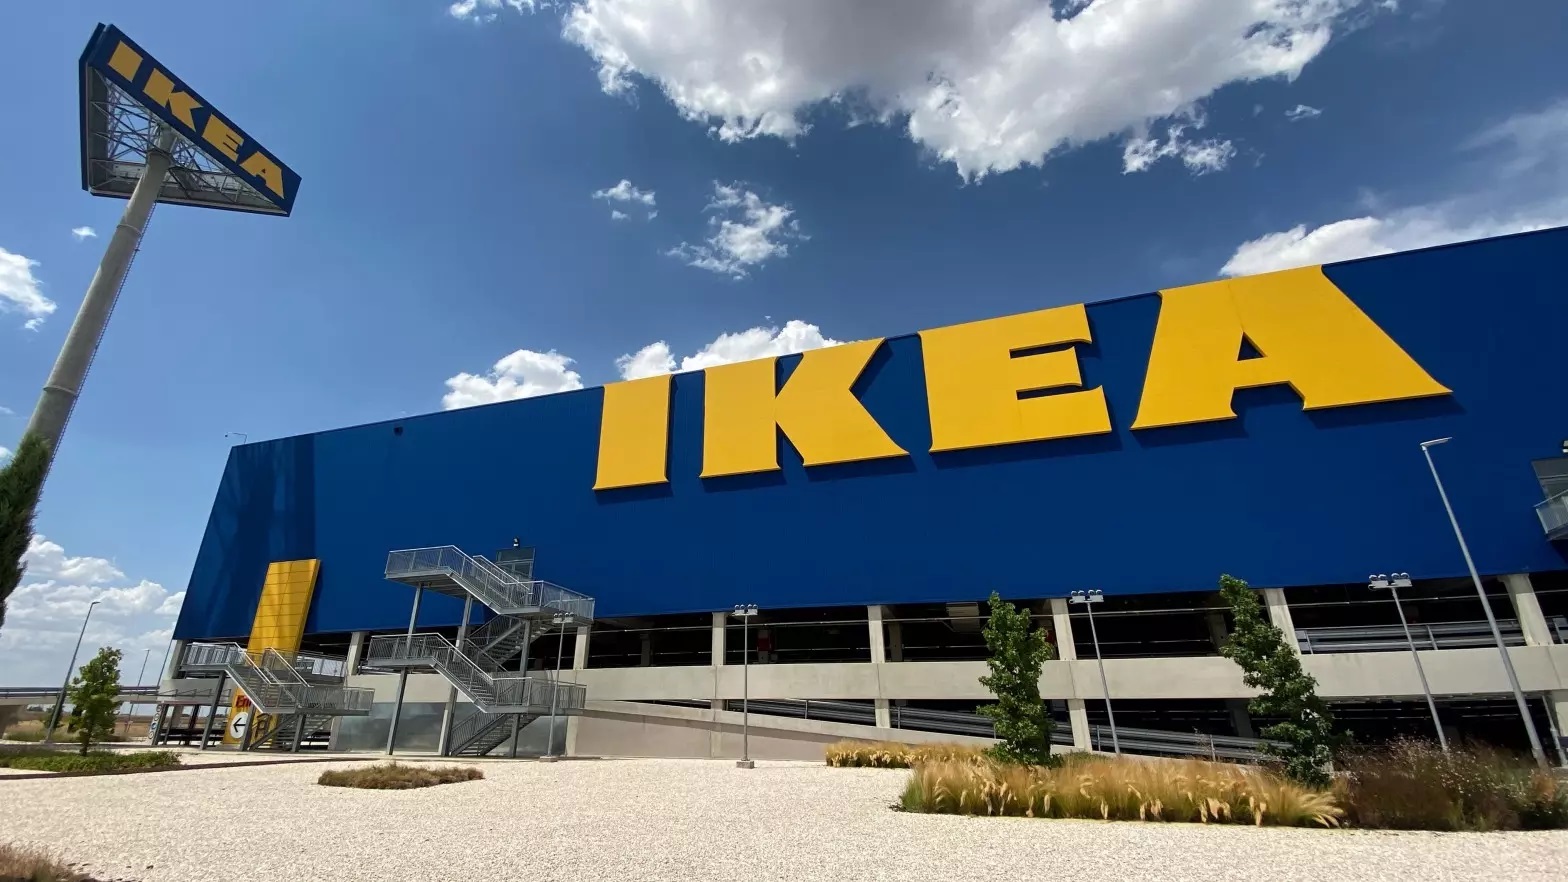 Colas kilométricas en Ikea por conseguir su nueva vajilla: este es su precio